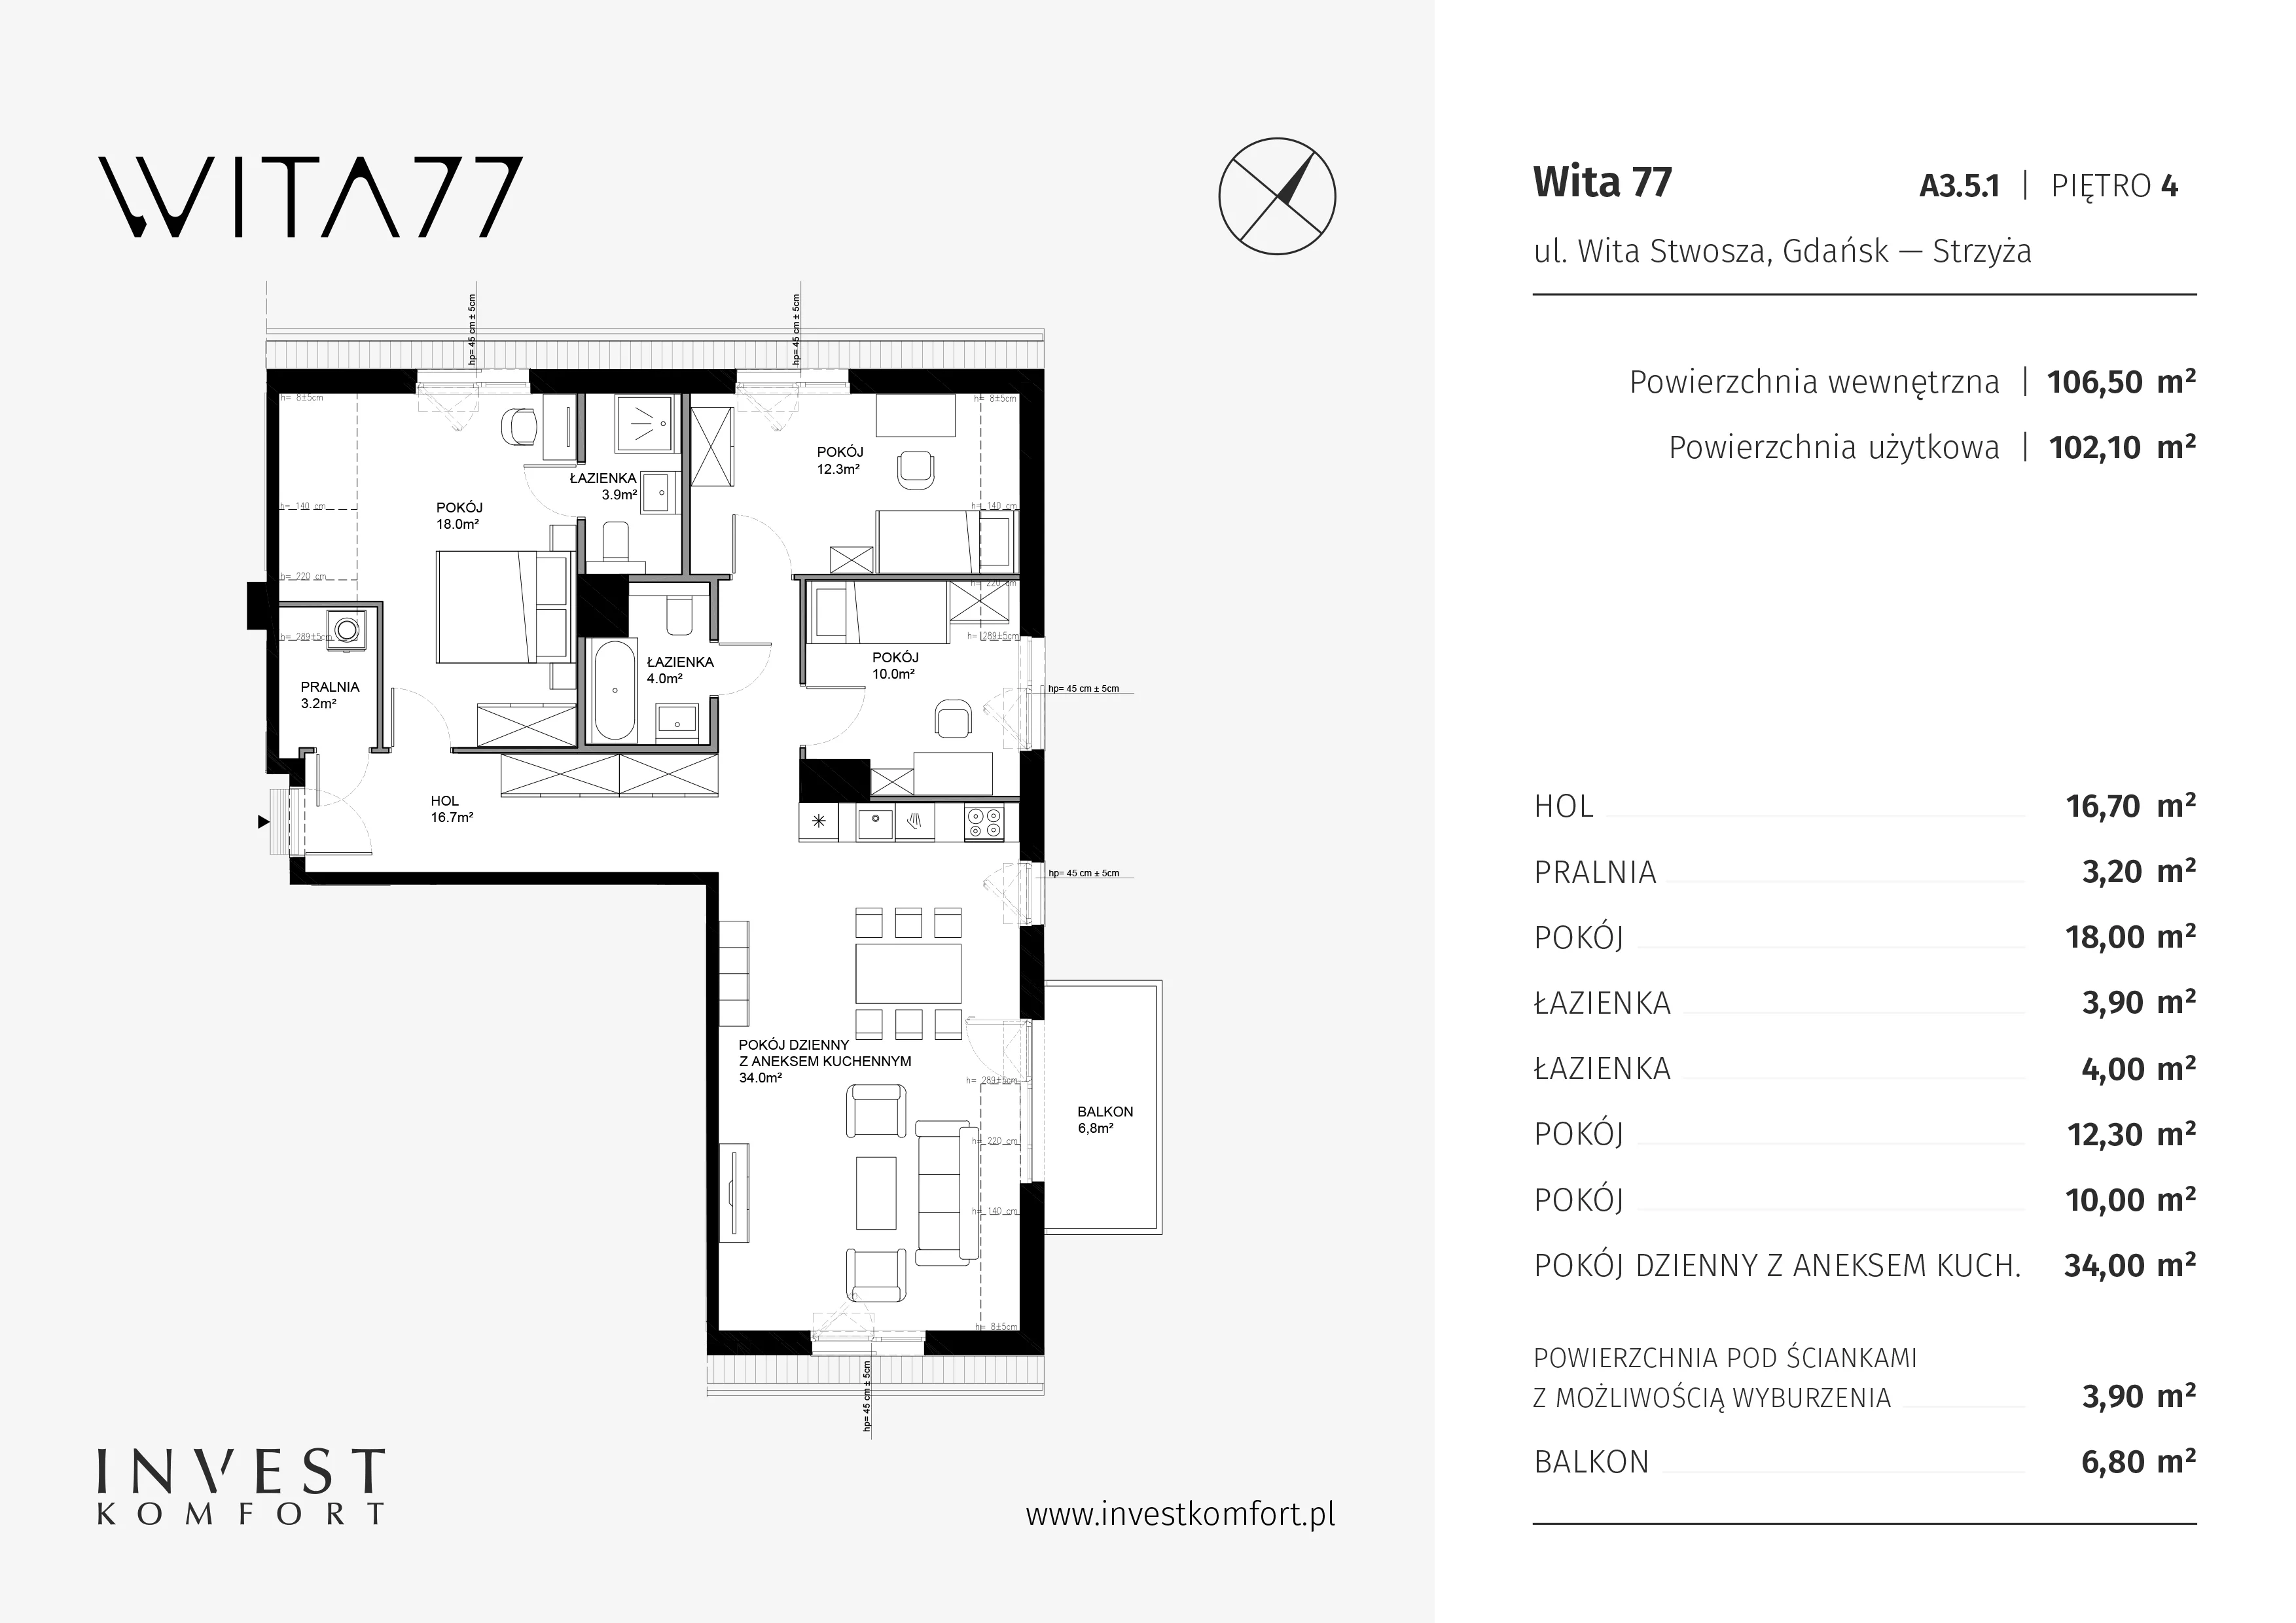 Apartament 106,50 m², piętro 4, oferta nr A3.5.1, Wita 77, Gdańsk, Strzyża, ul. Wita Stwosza 77